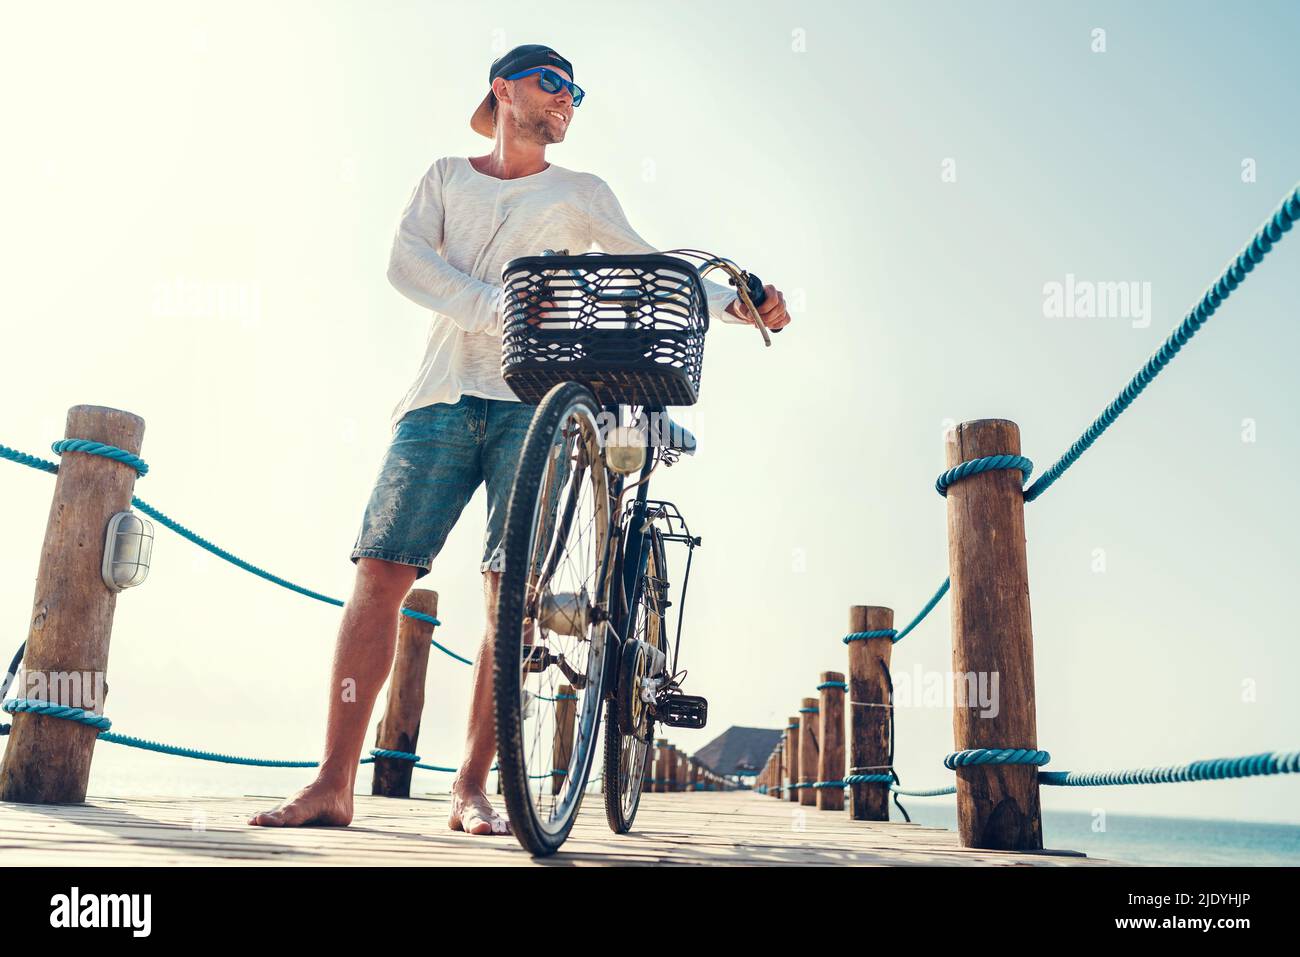 Porträt eines glücklichen lächelnden barfuss-Mannes, gekleidet in leichte Sommerkleidung und Sonnenbrille, der auf dem hölzernen Seebrücke ein Fahrrad fährt. Sorgloser Urlaub in Stockfoto